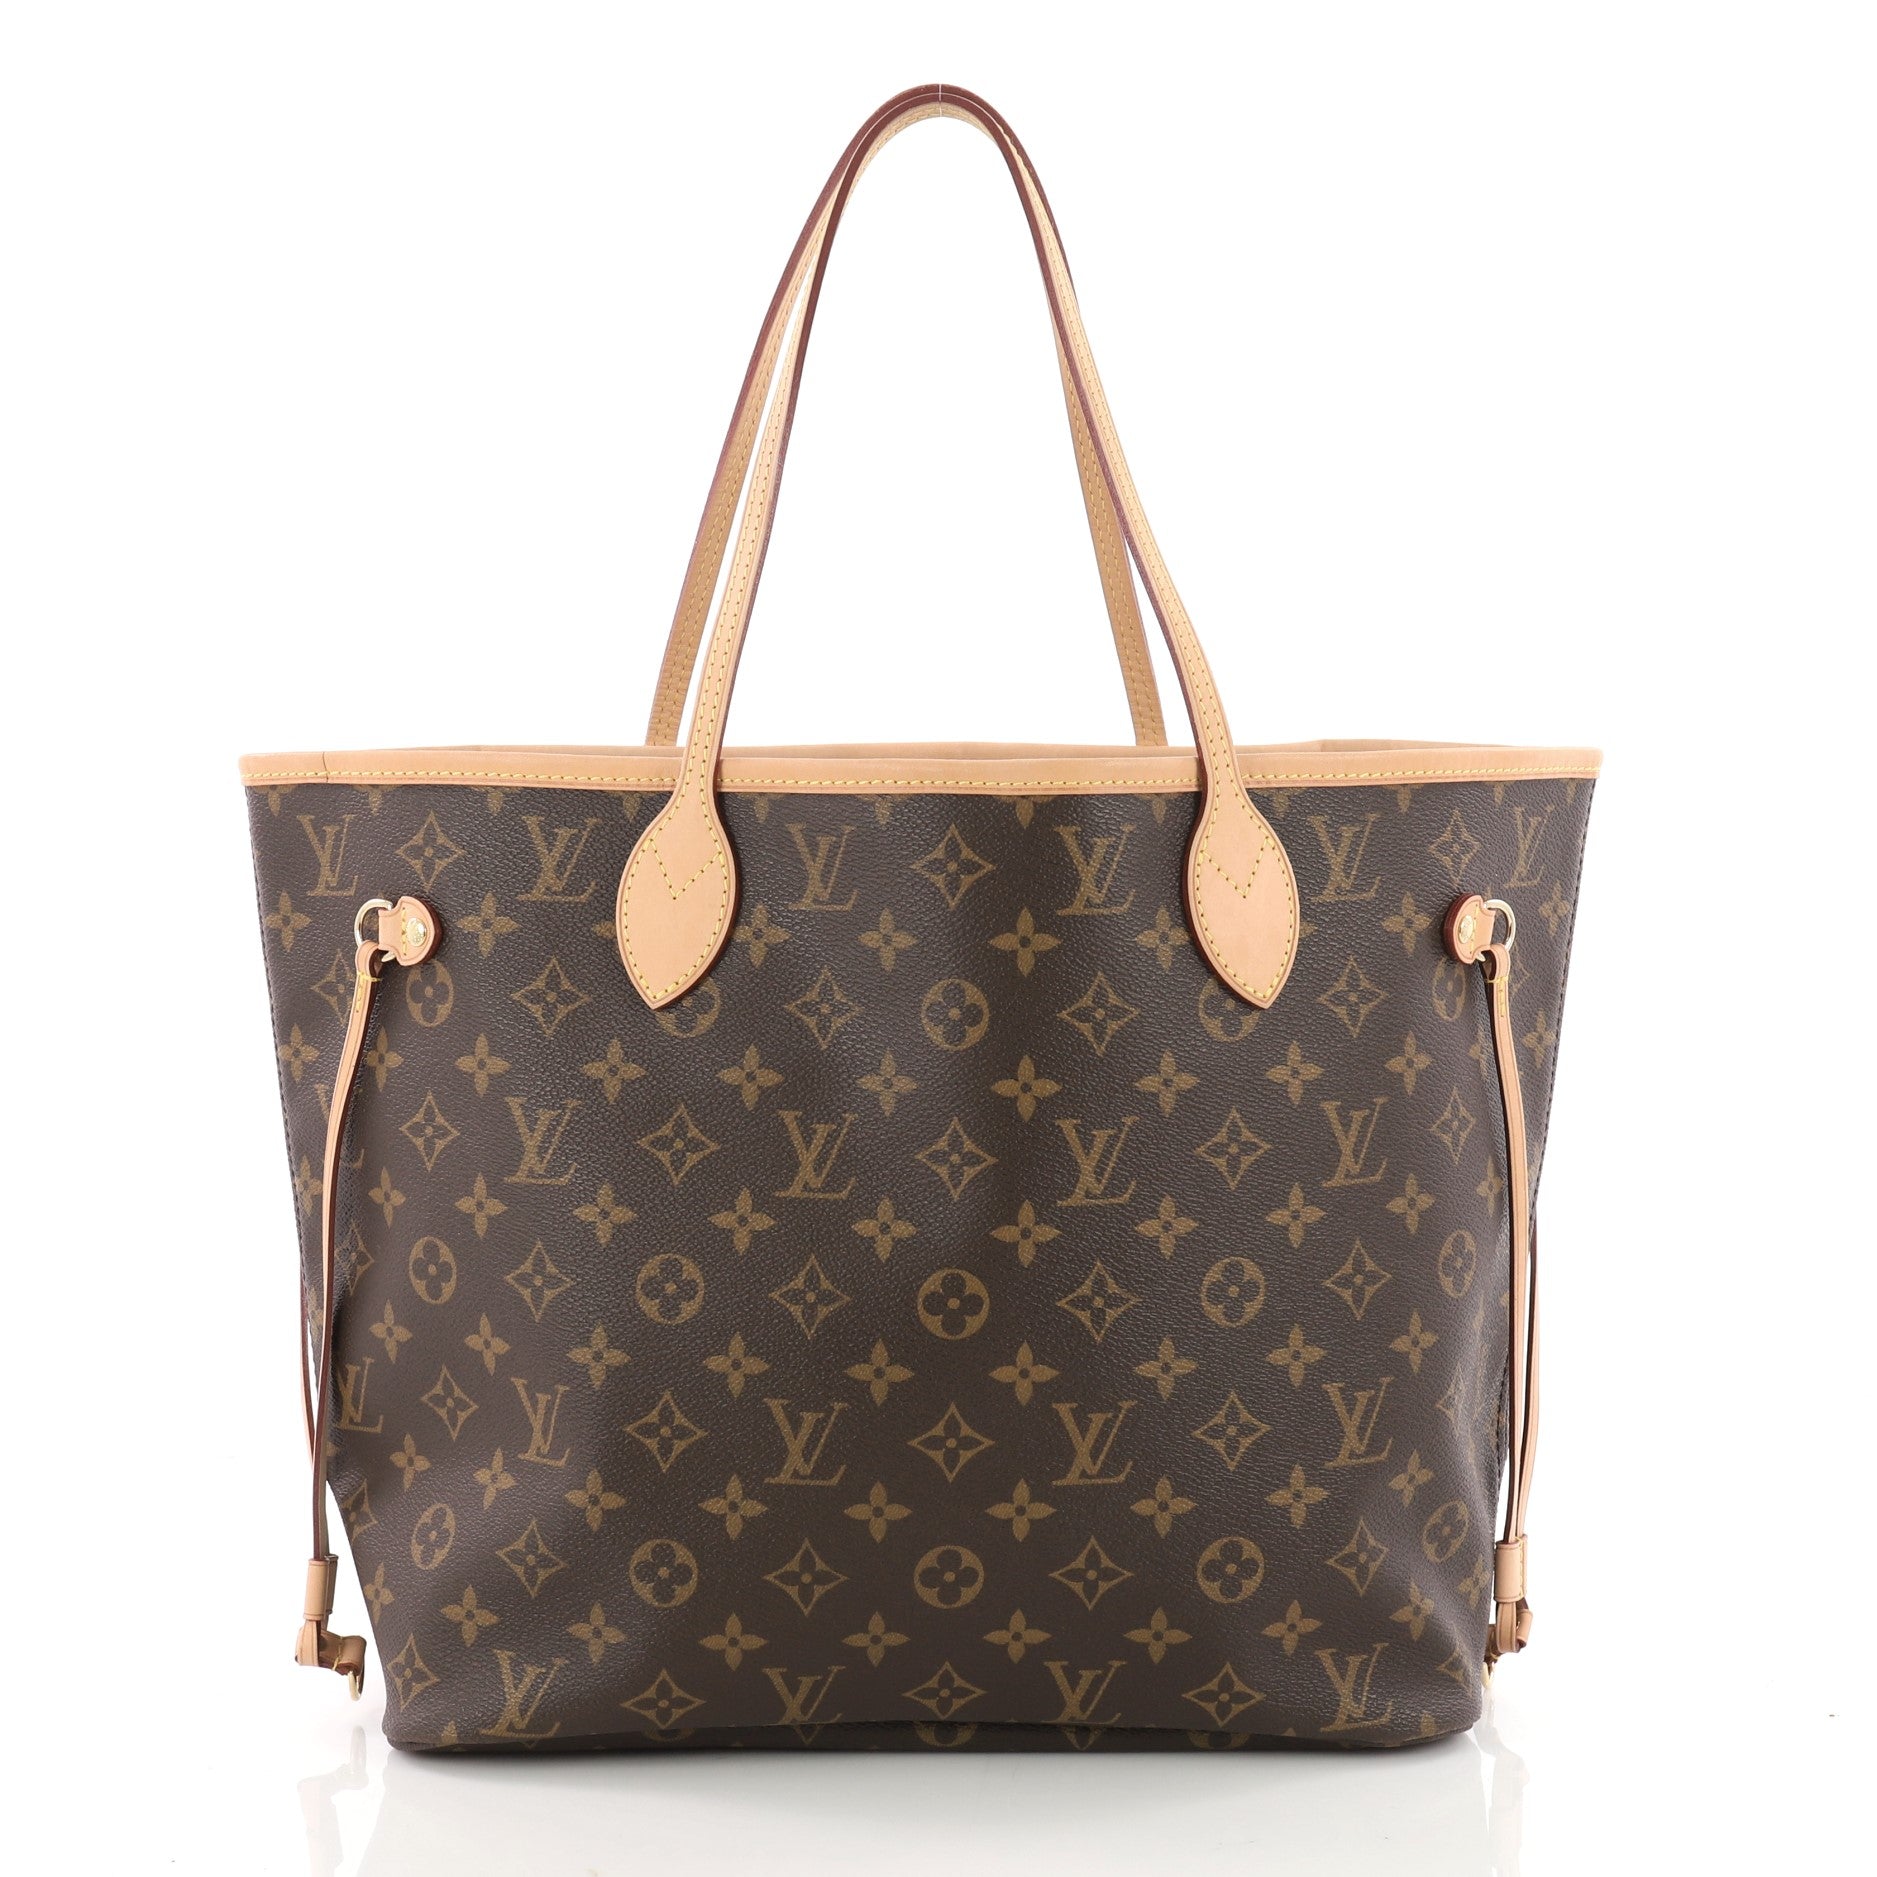 Satin Pillow Luxury Bag Shaper For Louis Vuitton's Noe, Petite Noe and Noe  BB.